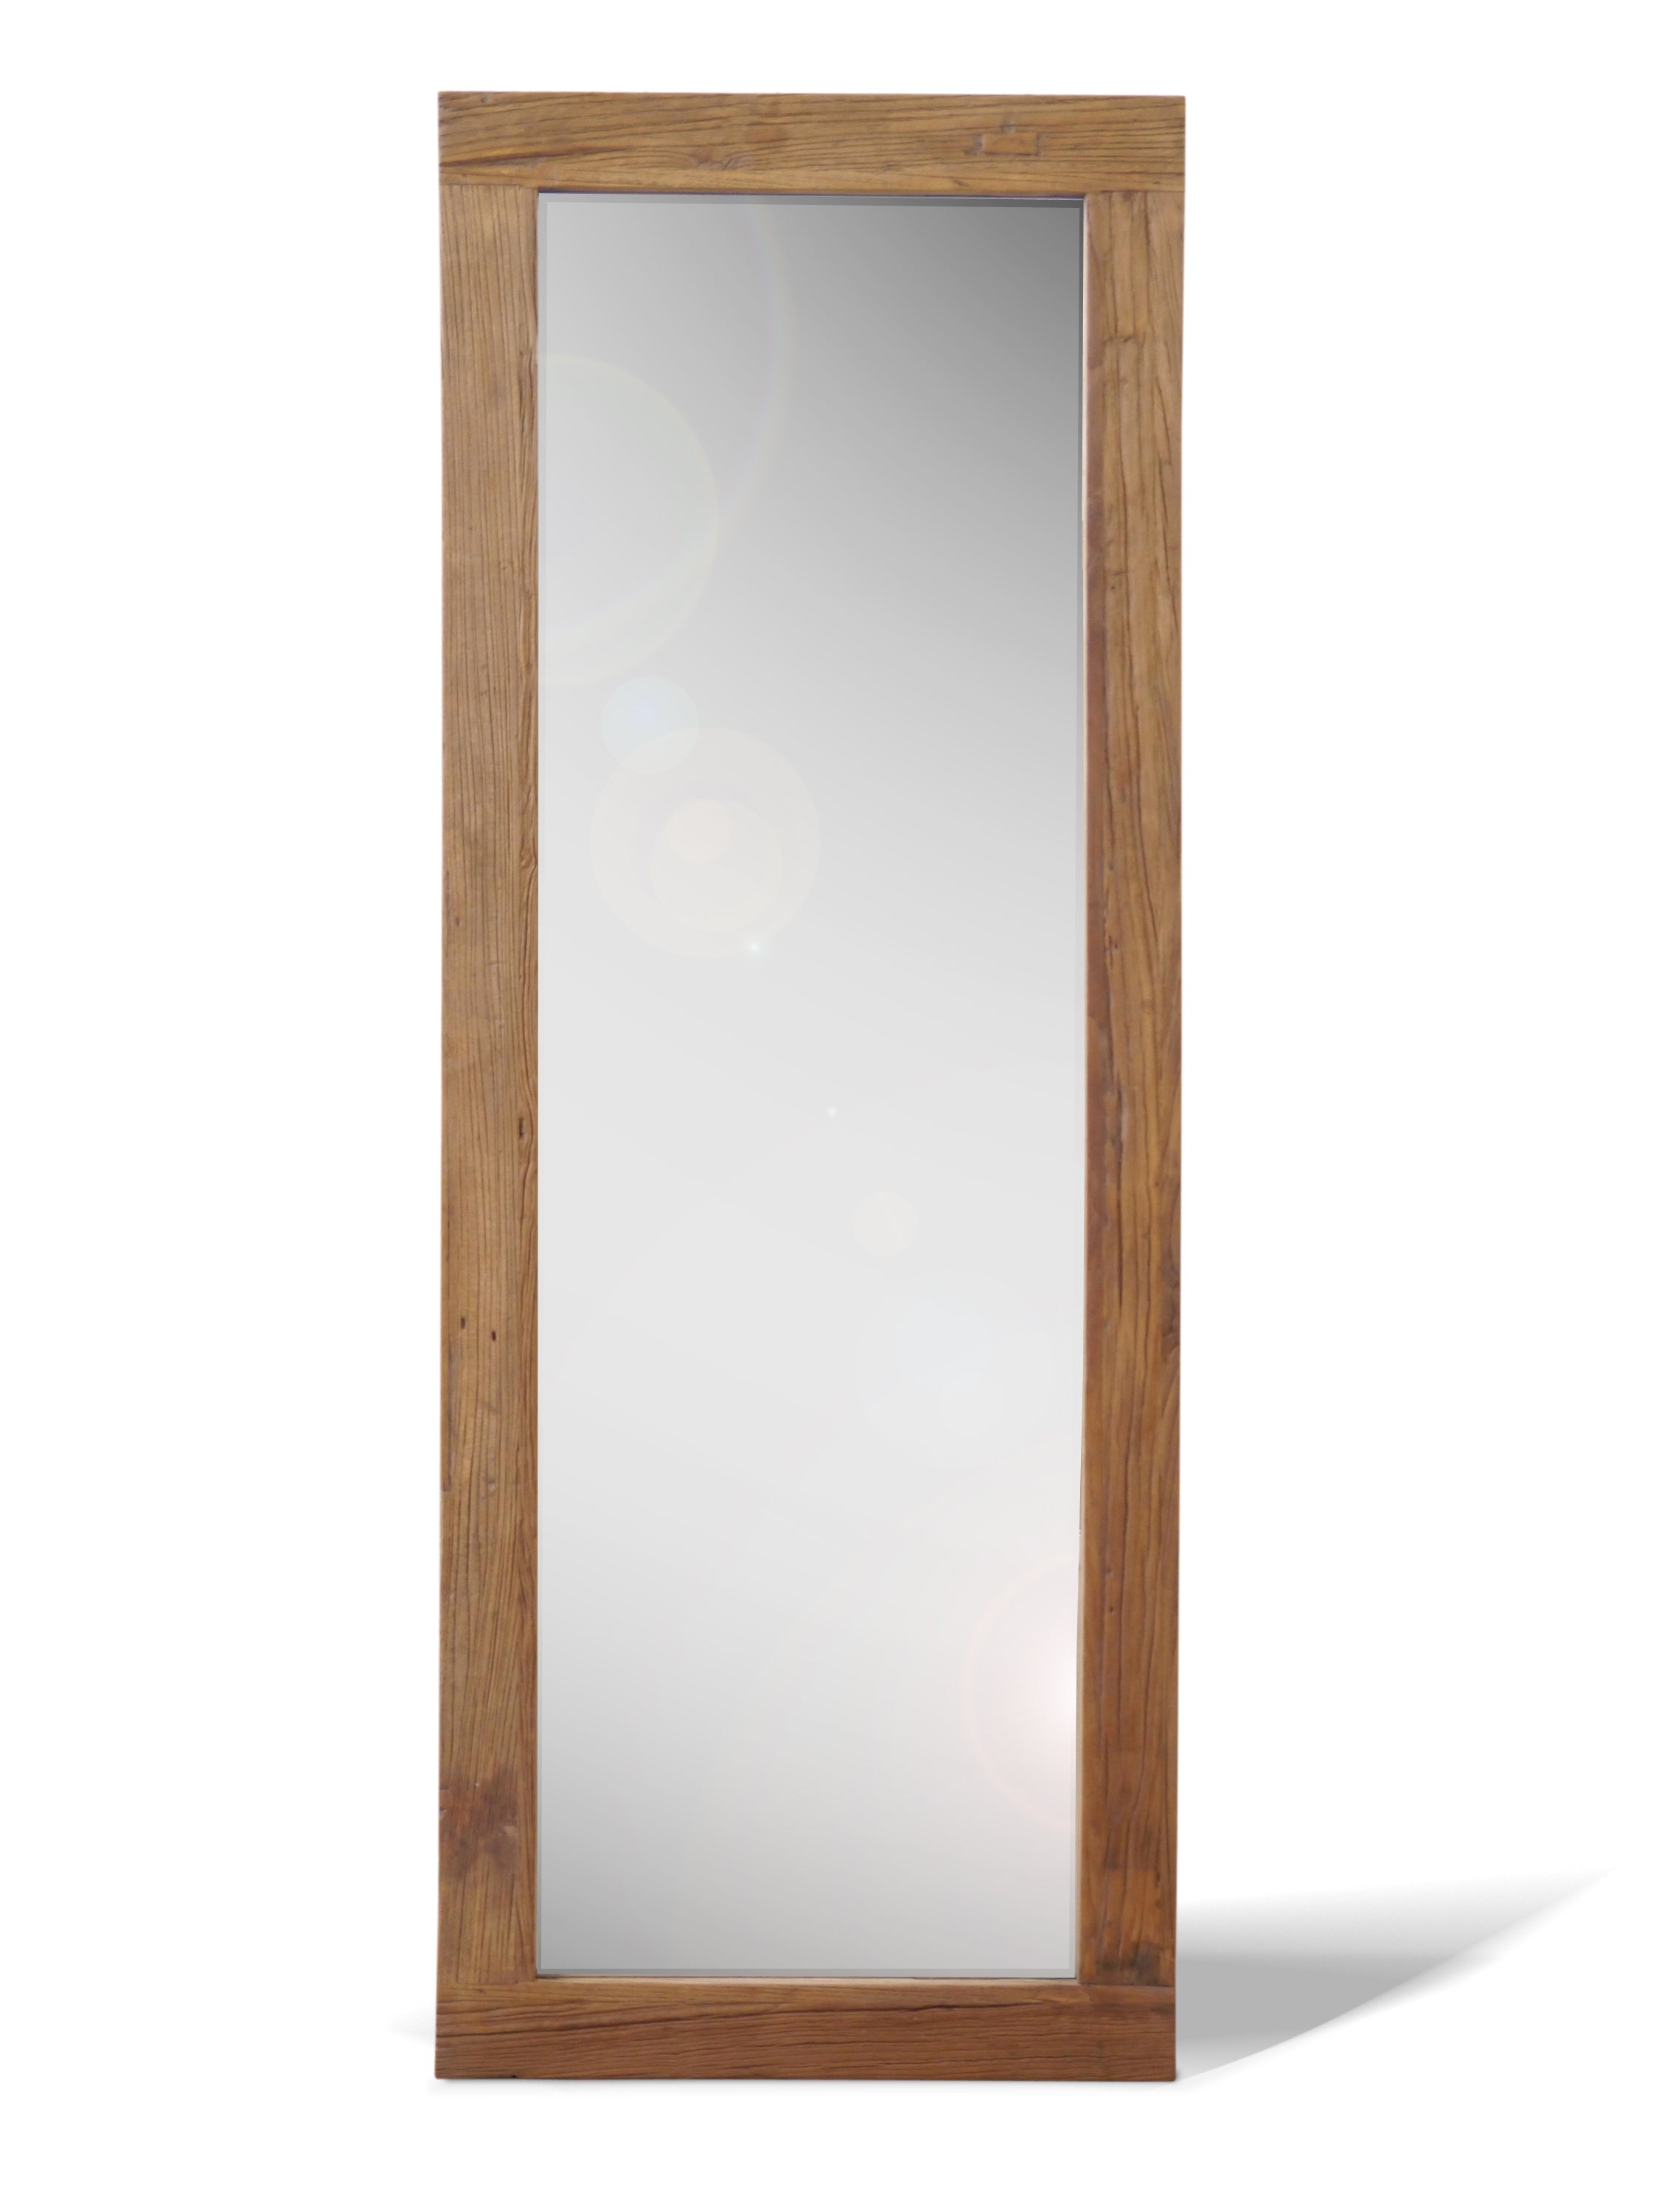 ひつじ商品一覧GALLUP 鏡 ミラー 額装 木製 古材 アンティーク